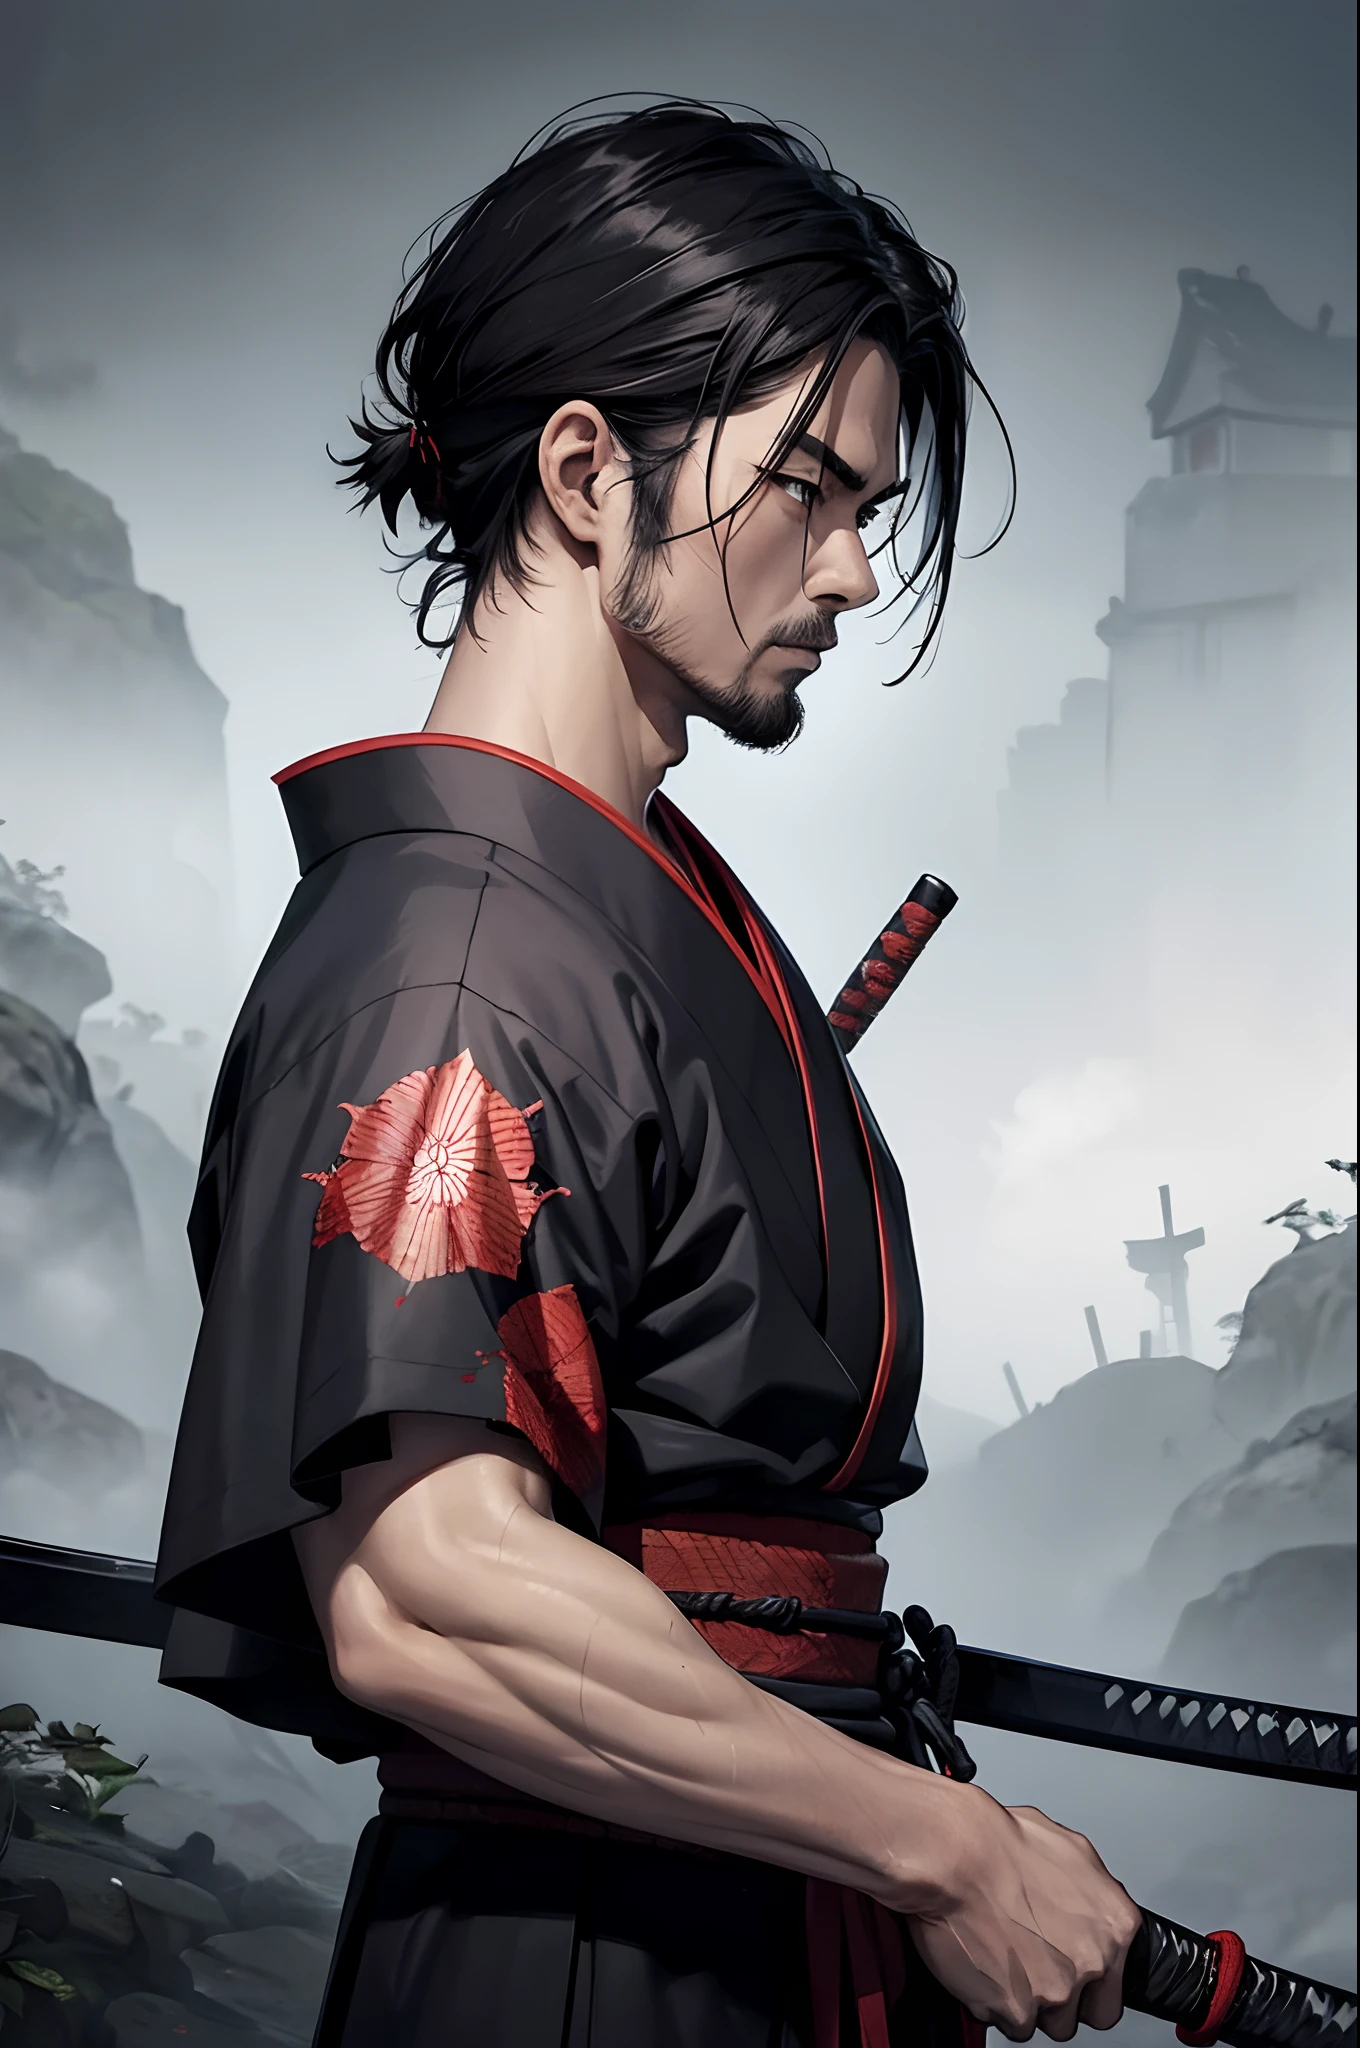 1 hombre, kimono samurái, venas endurecidas, espada, Sangre, escena oscura, naturaleza, de un lado, pintura fotorrealista